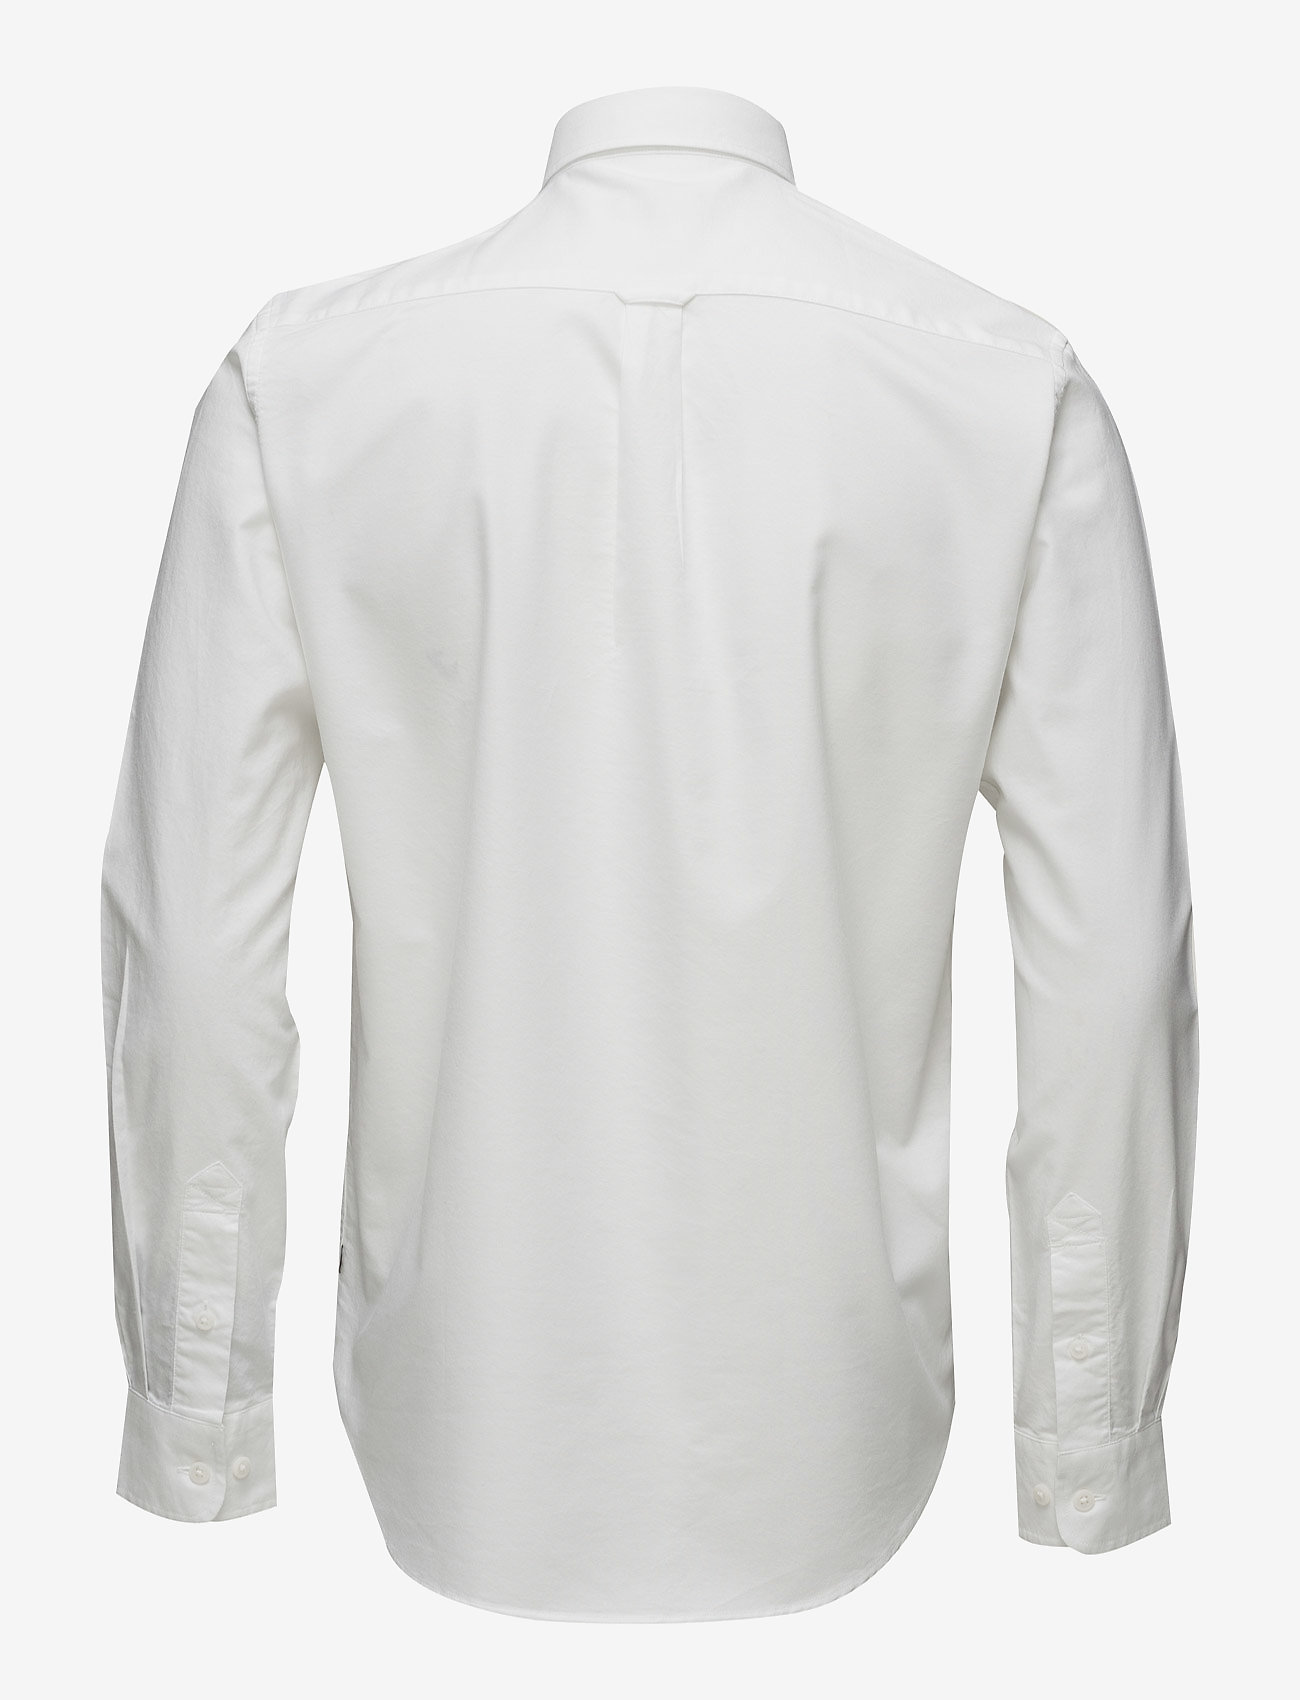 Matinique - Jude - oxford-skjortor - white - 1